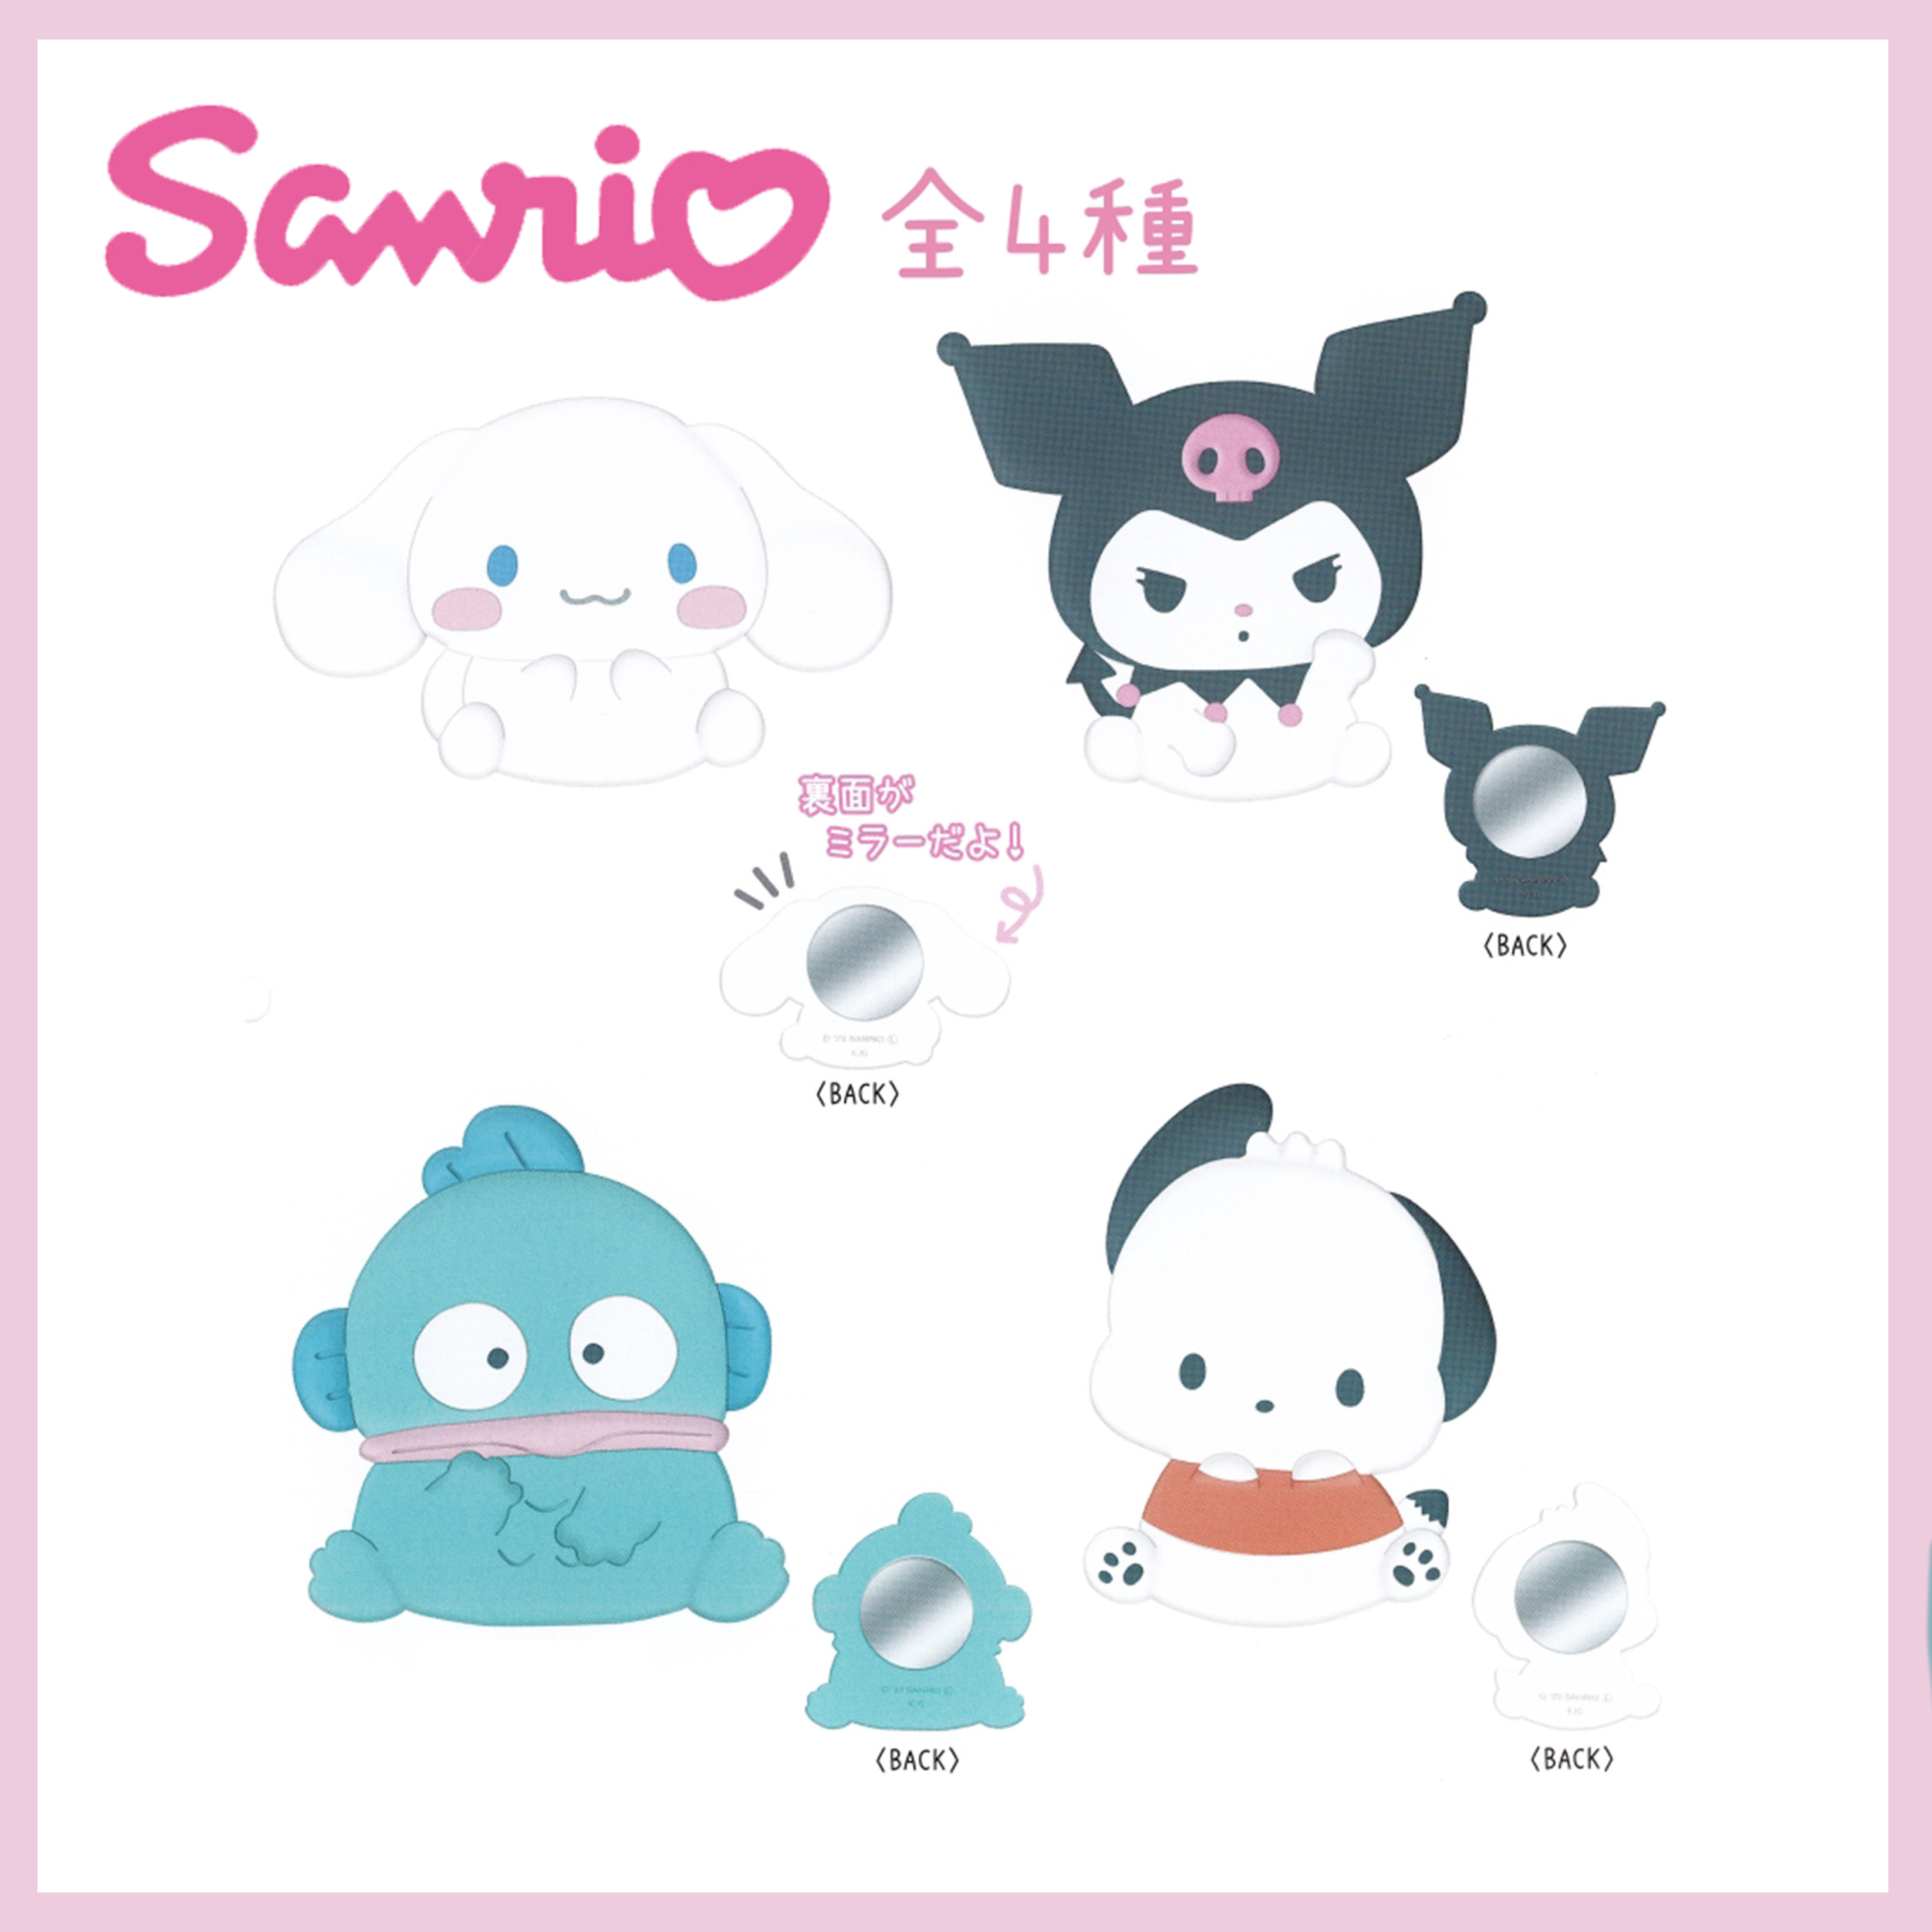 鏡子-三麗鷗 Sanrio 日本進口正版授權